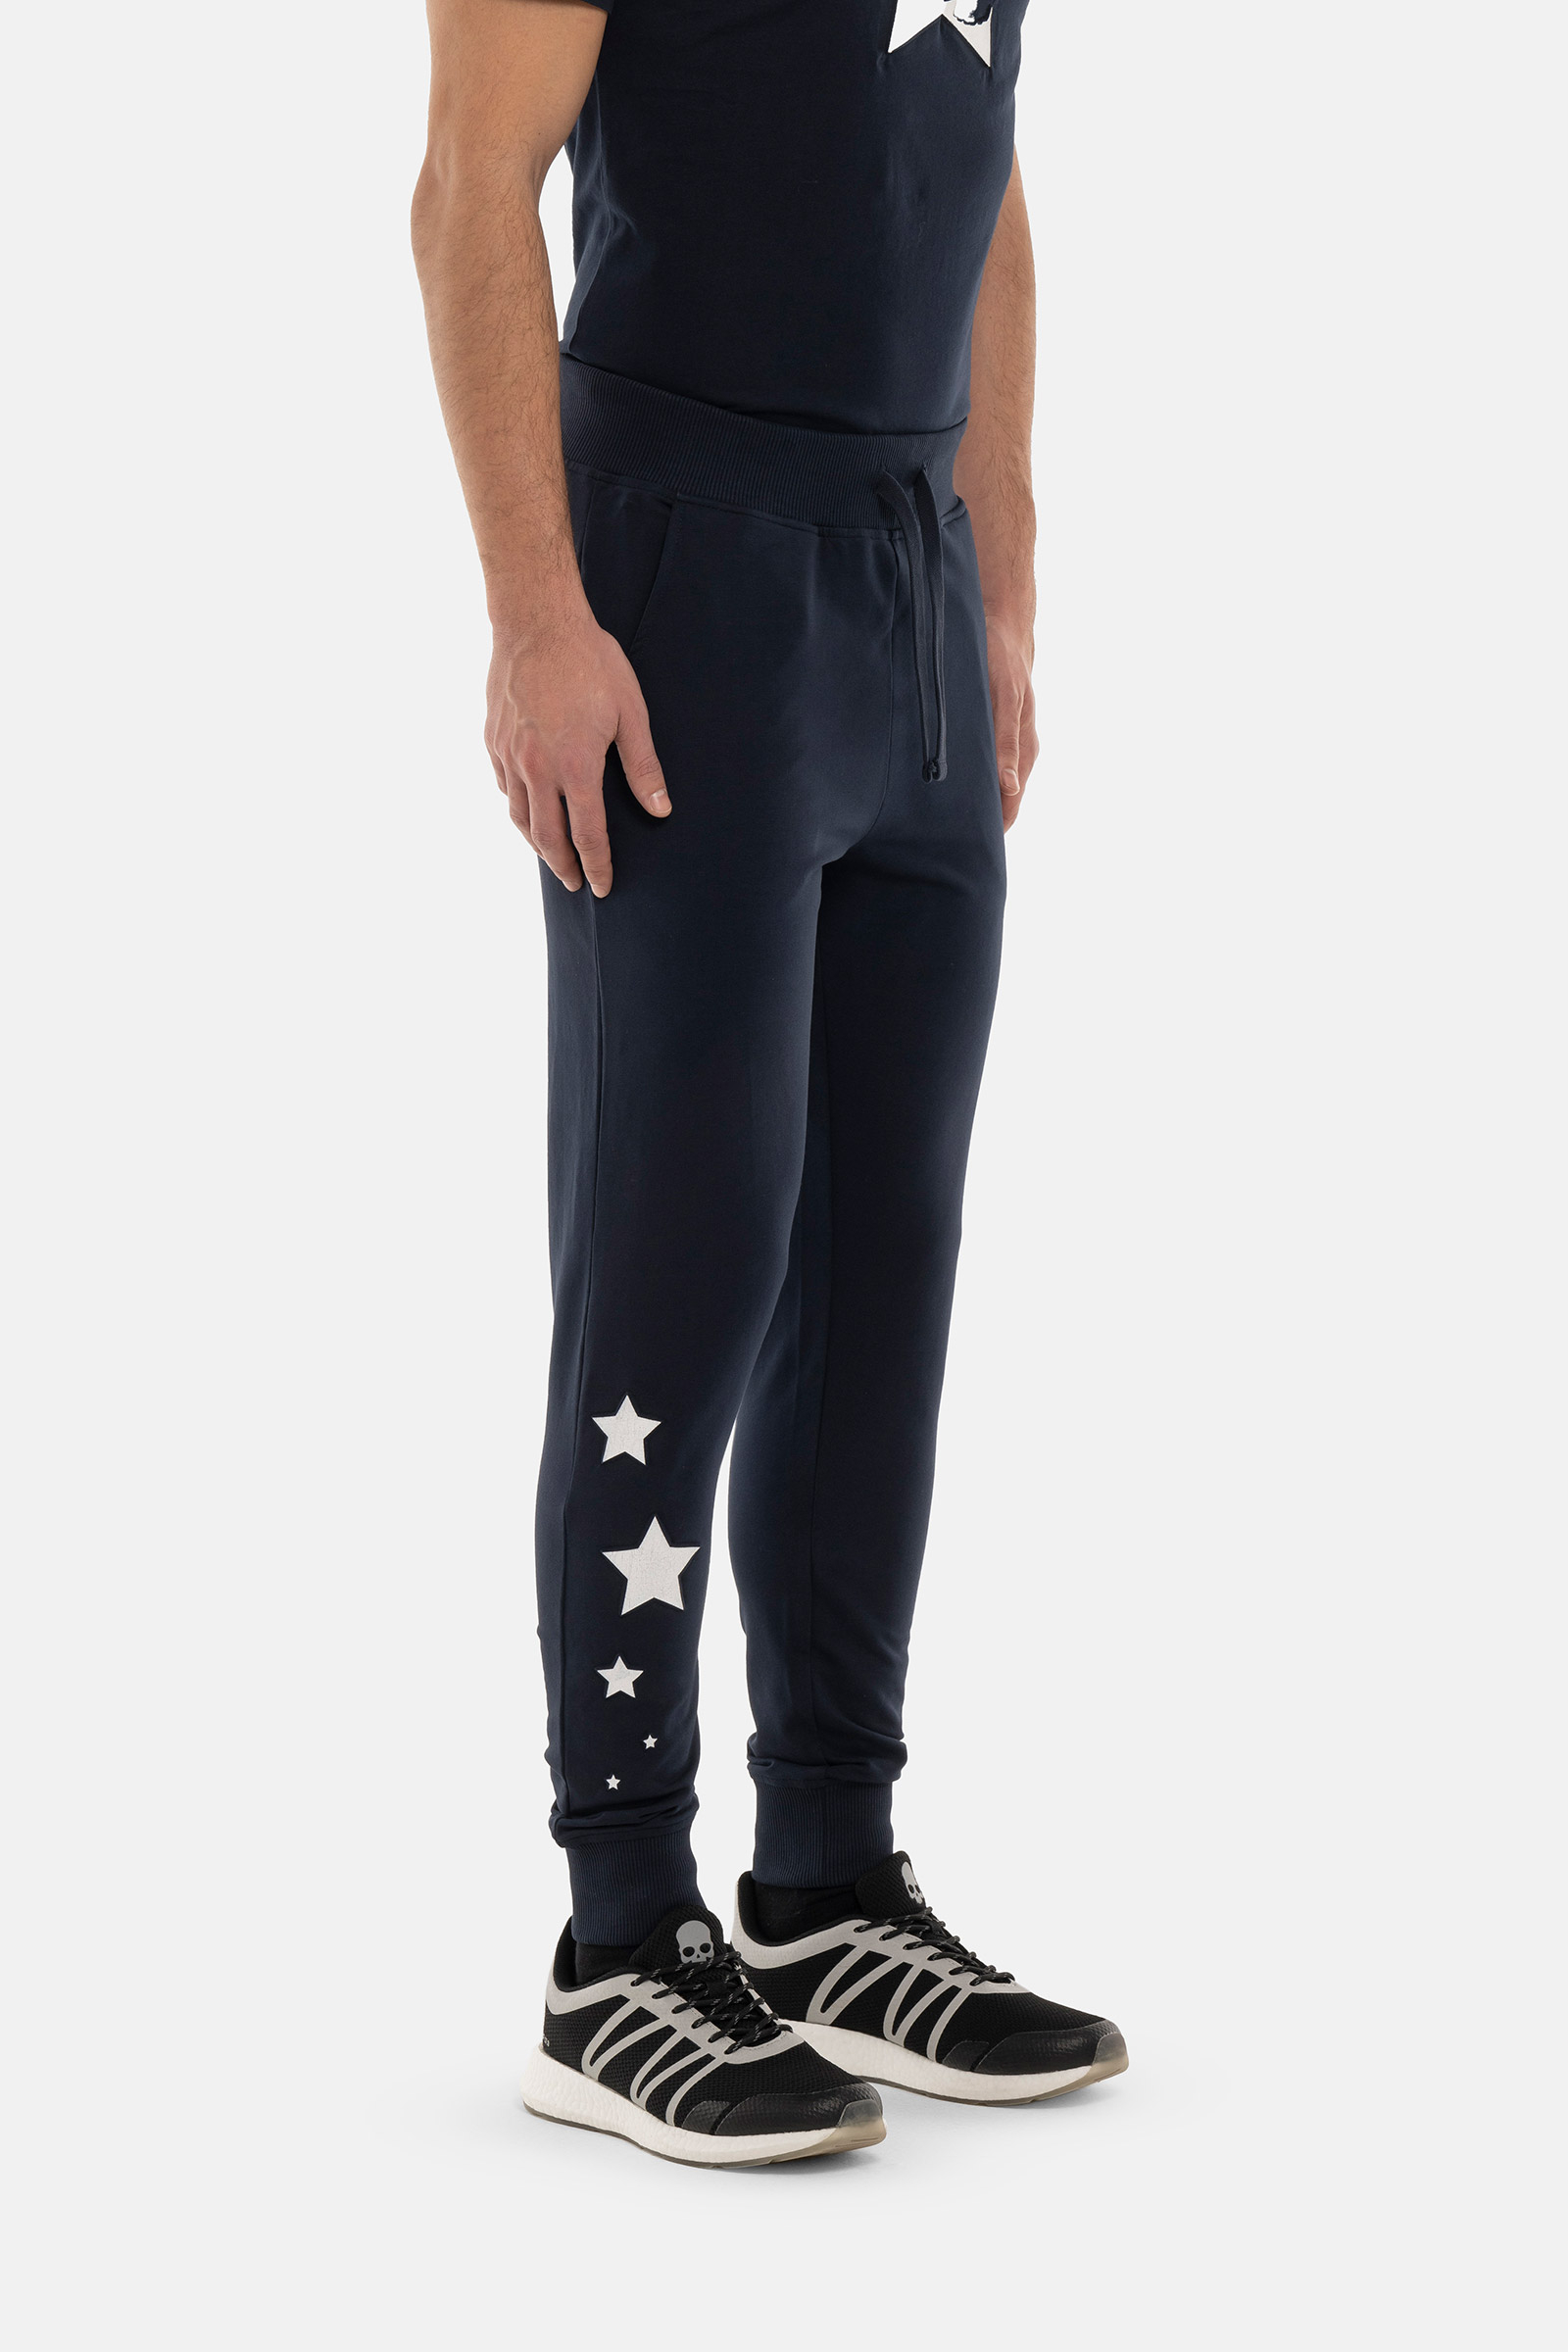 PANTALONI STARS - BLUE - Abbigliamento sportivo | Hydrogen